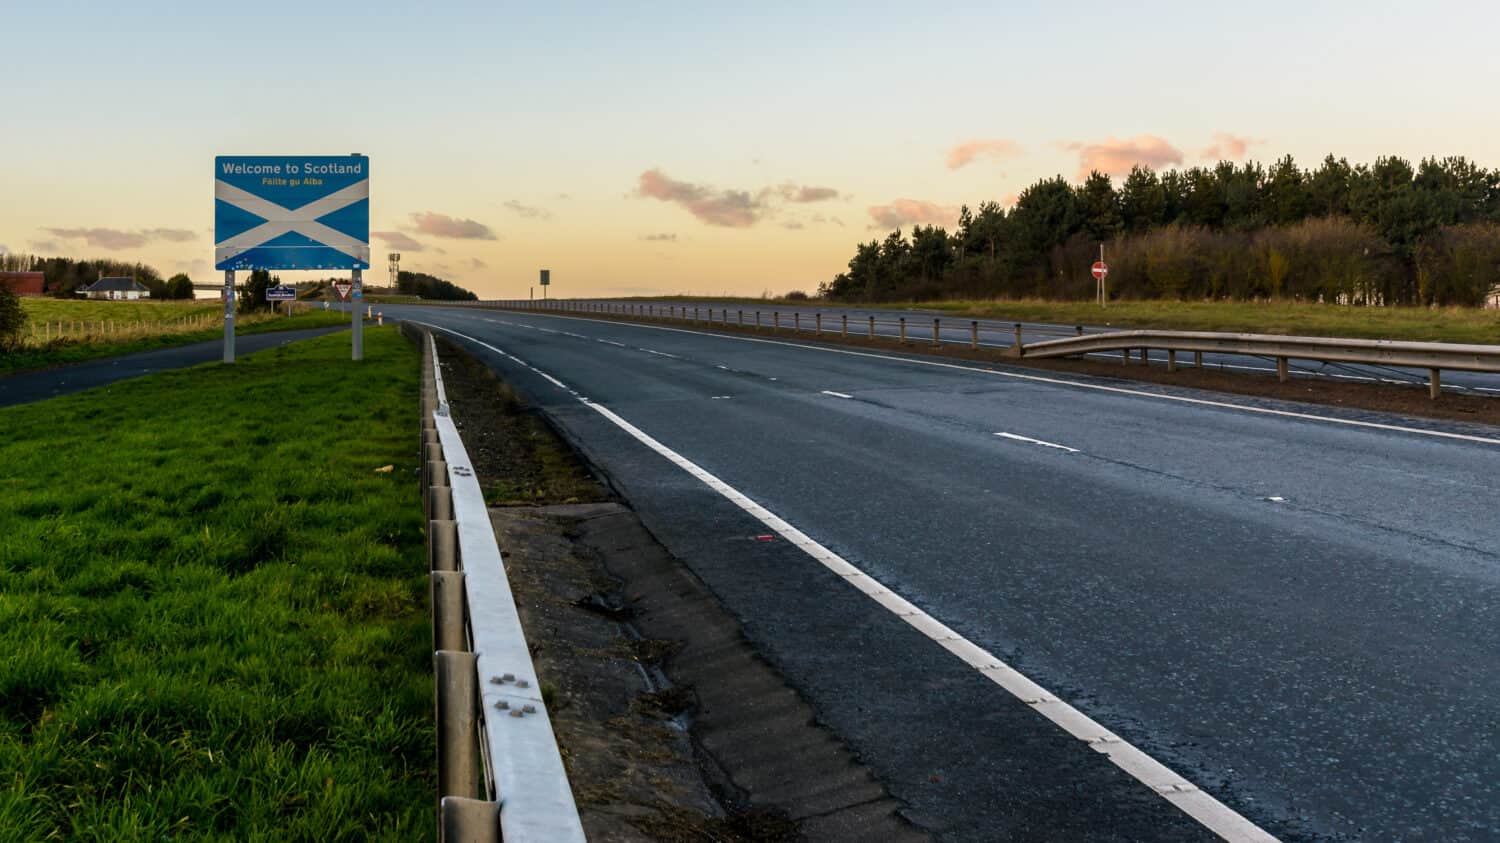 Benvenuti in Scozia Road Sign A, situato al confine tra Scozia e Inghilterra sulla A1